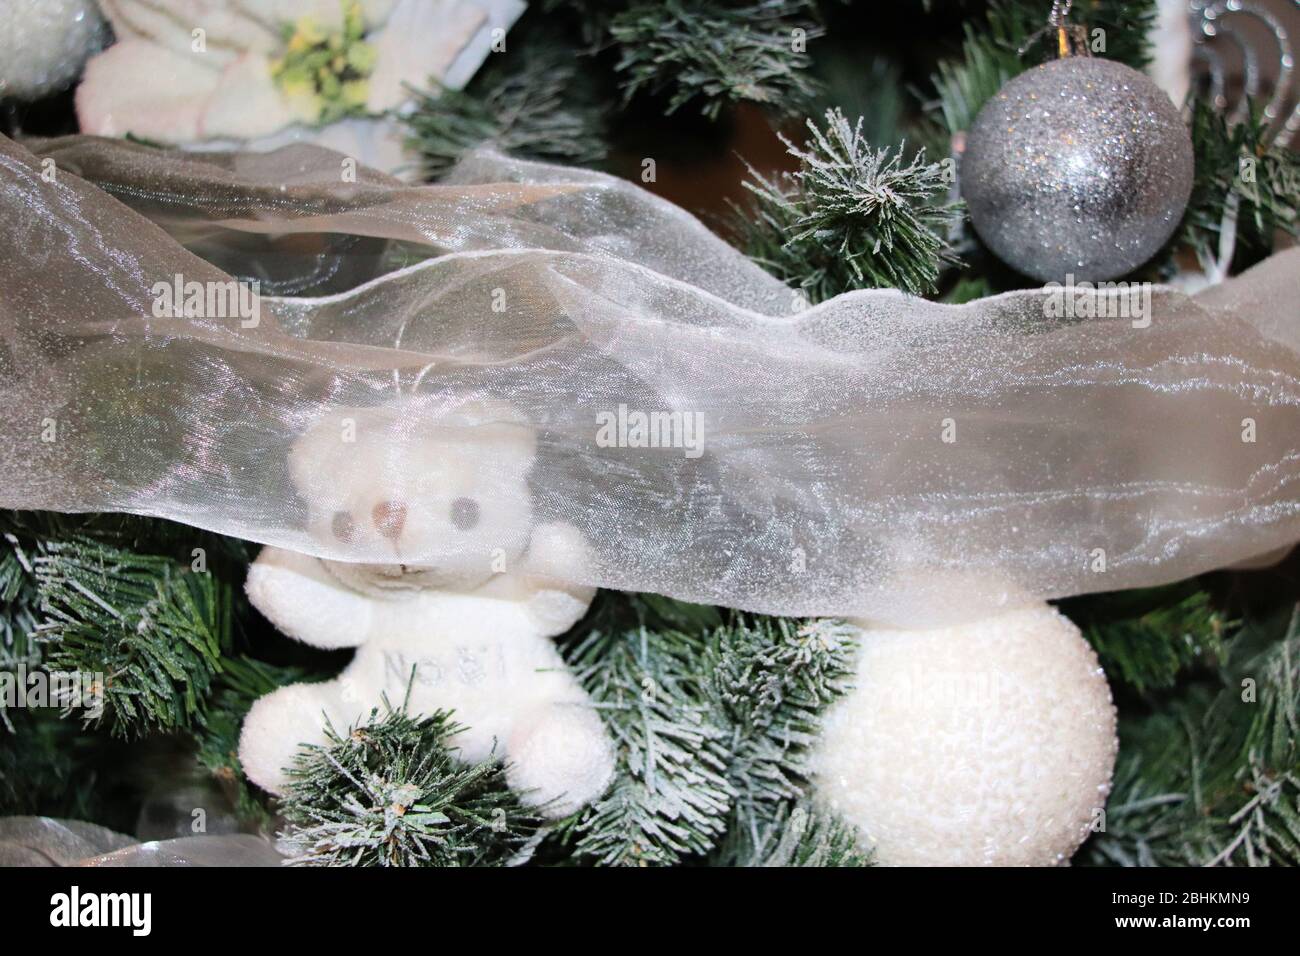 Decorazioni Natalizie Bianche.Decorazioni Natalizie Sull Albero Di Natale Con Decorazioni Bianche Foto Stock Alamy